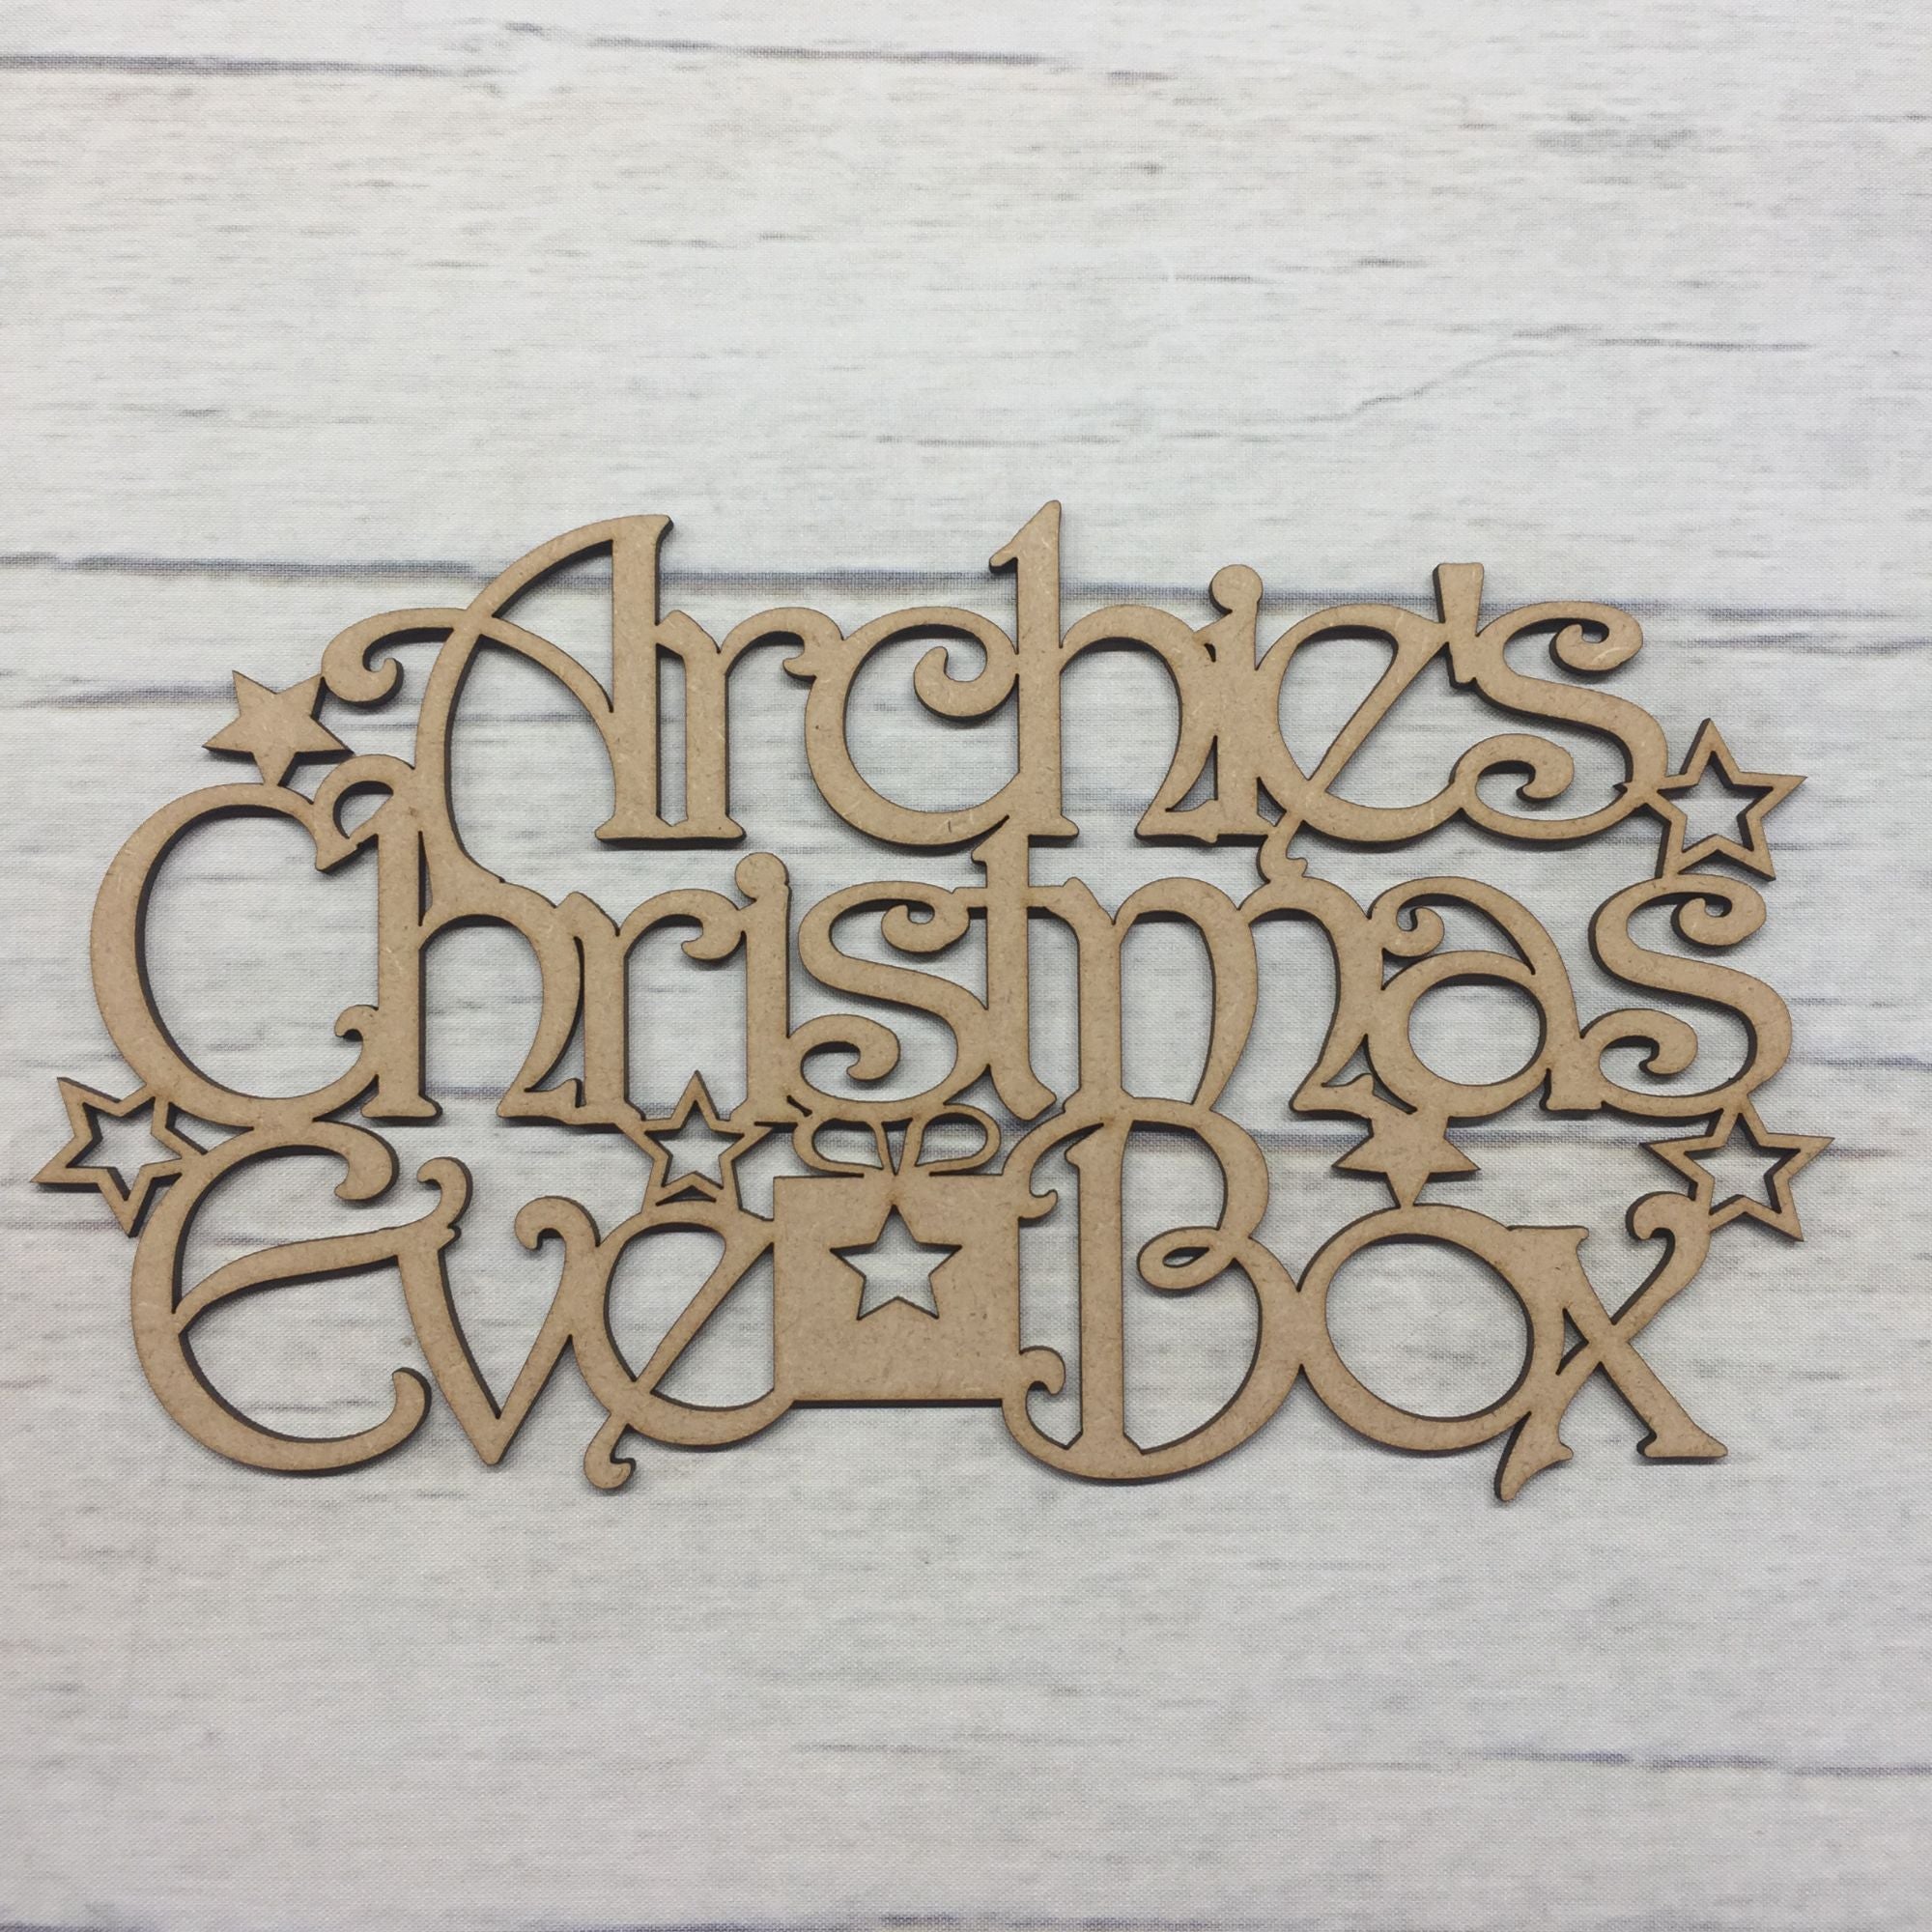 Christmas eve box topper - Star design - customised